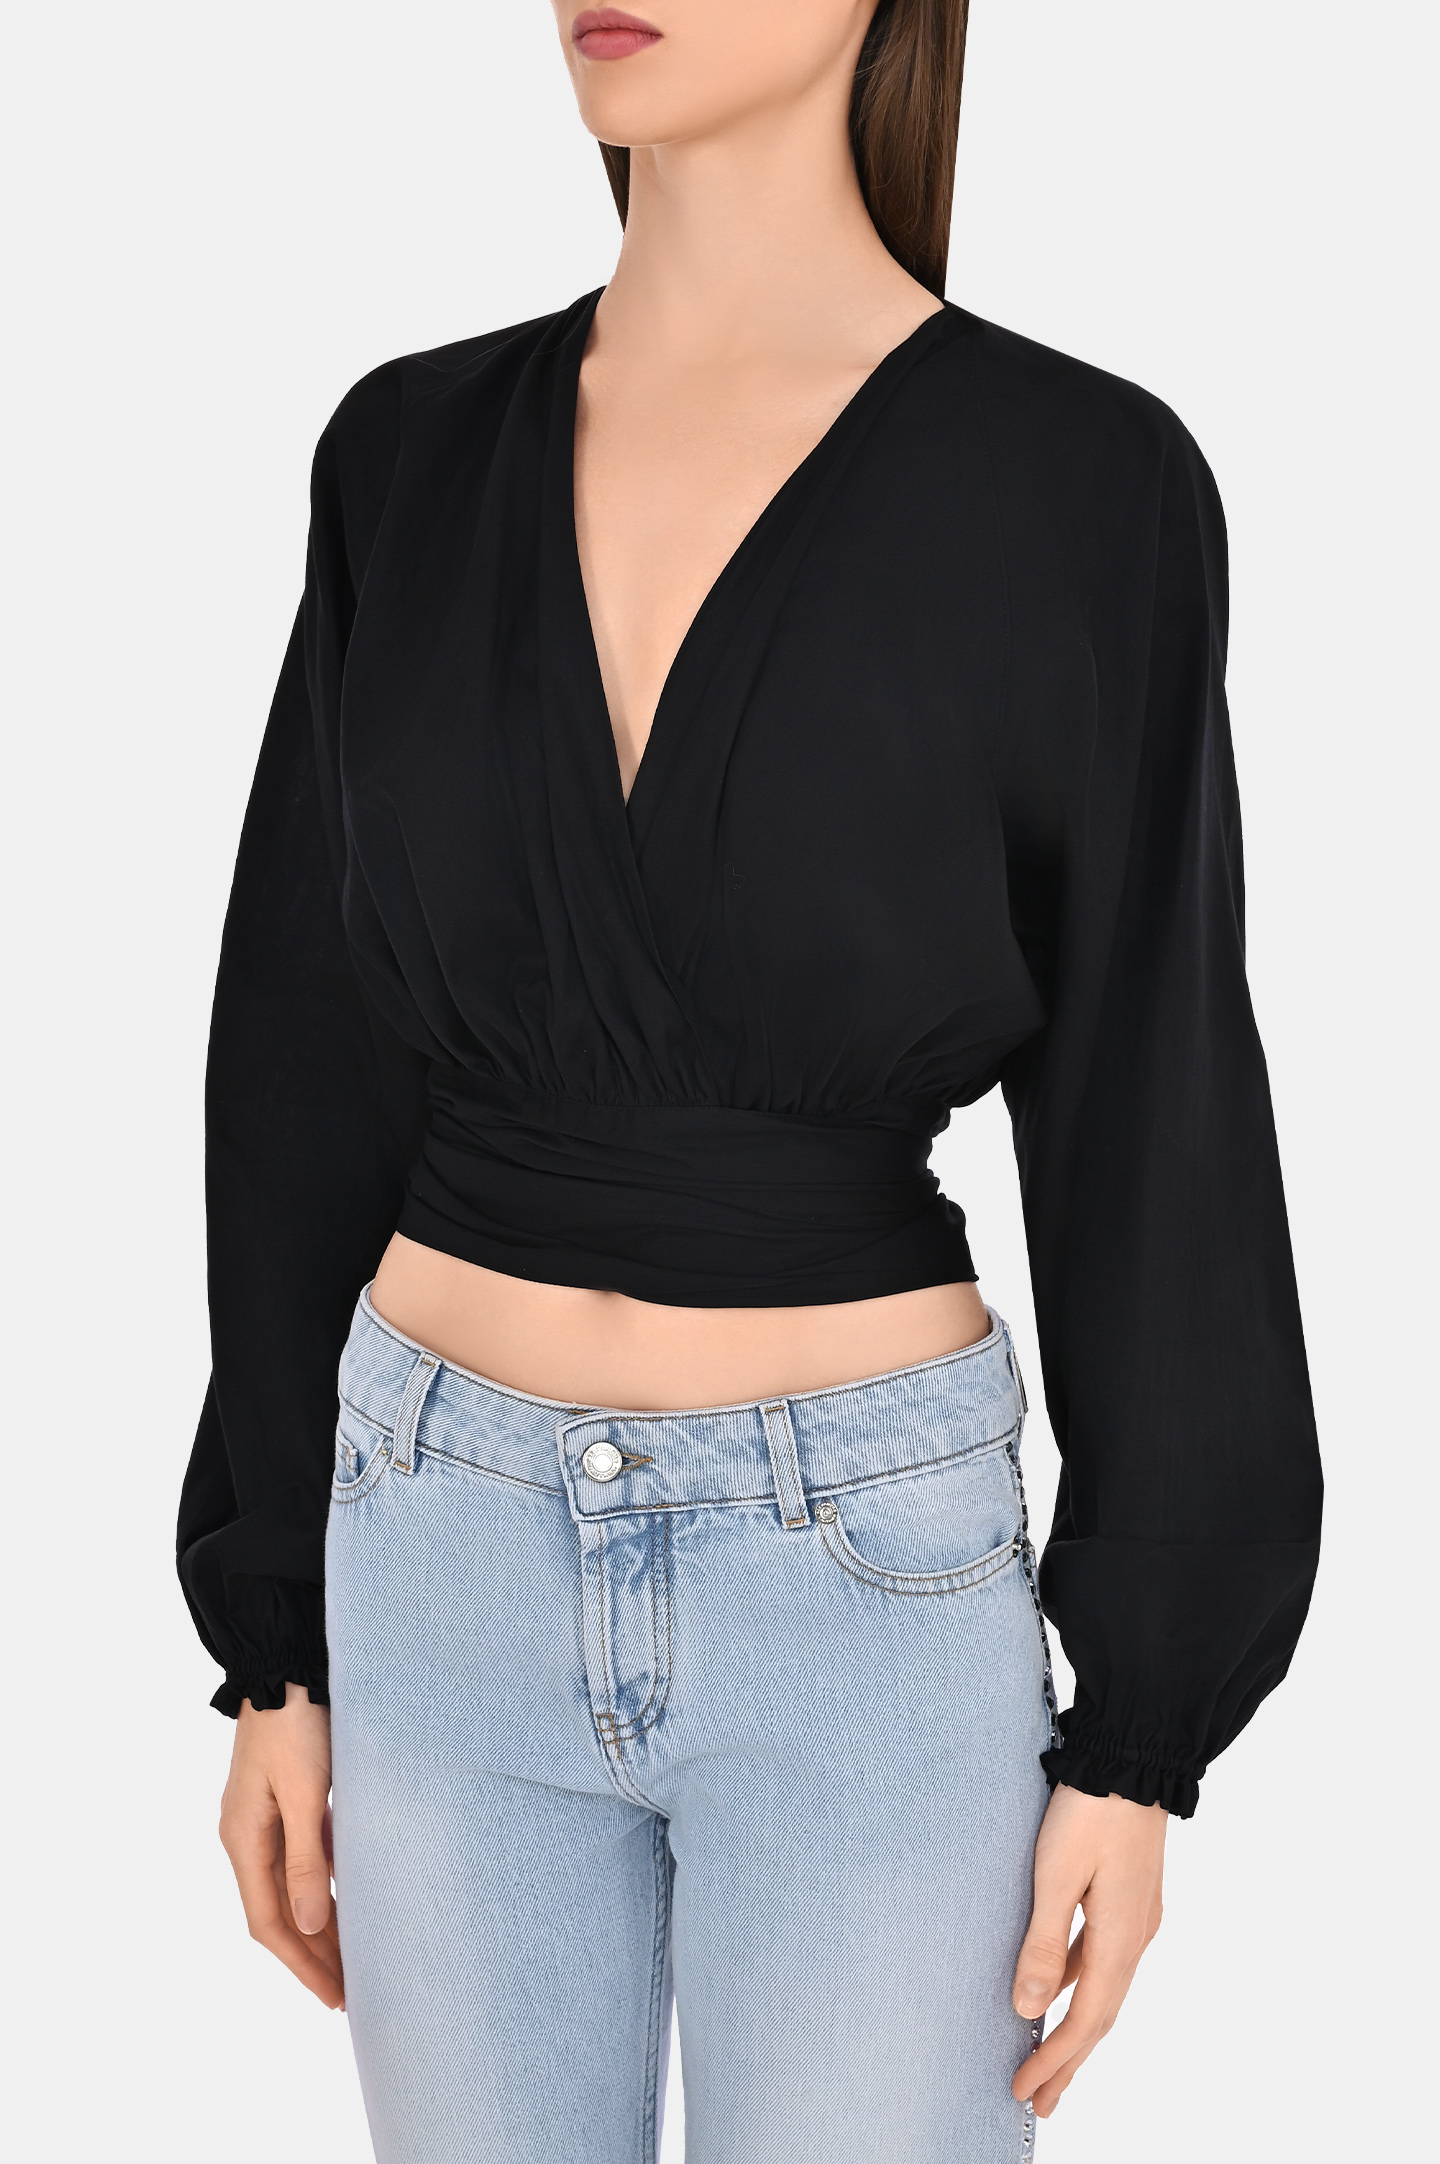 Блуза ALEXANDRE VAUTHIER 231TO18121008, цвет: Черный, Женский